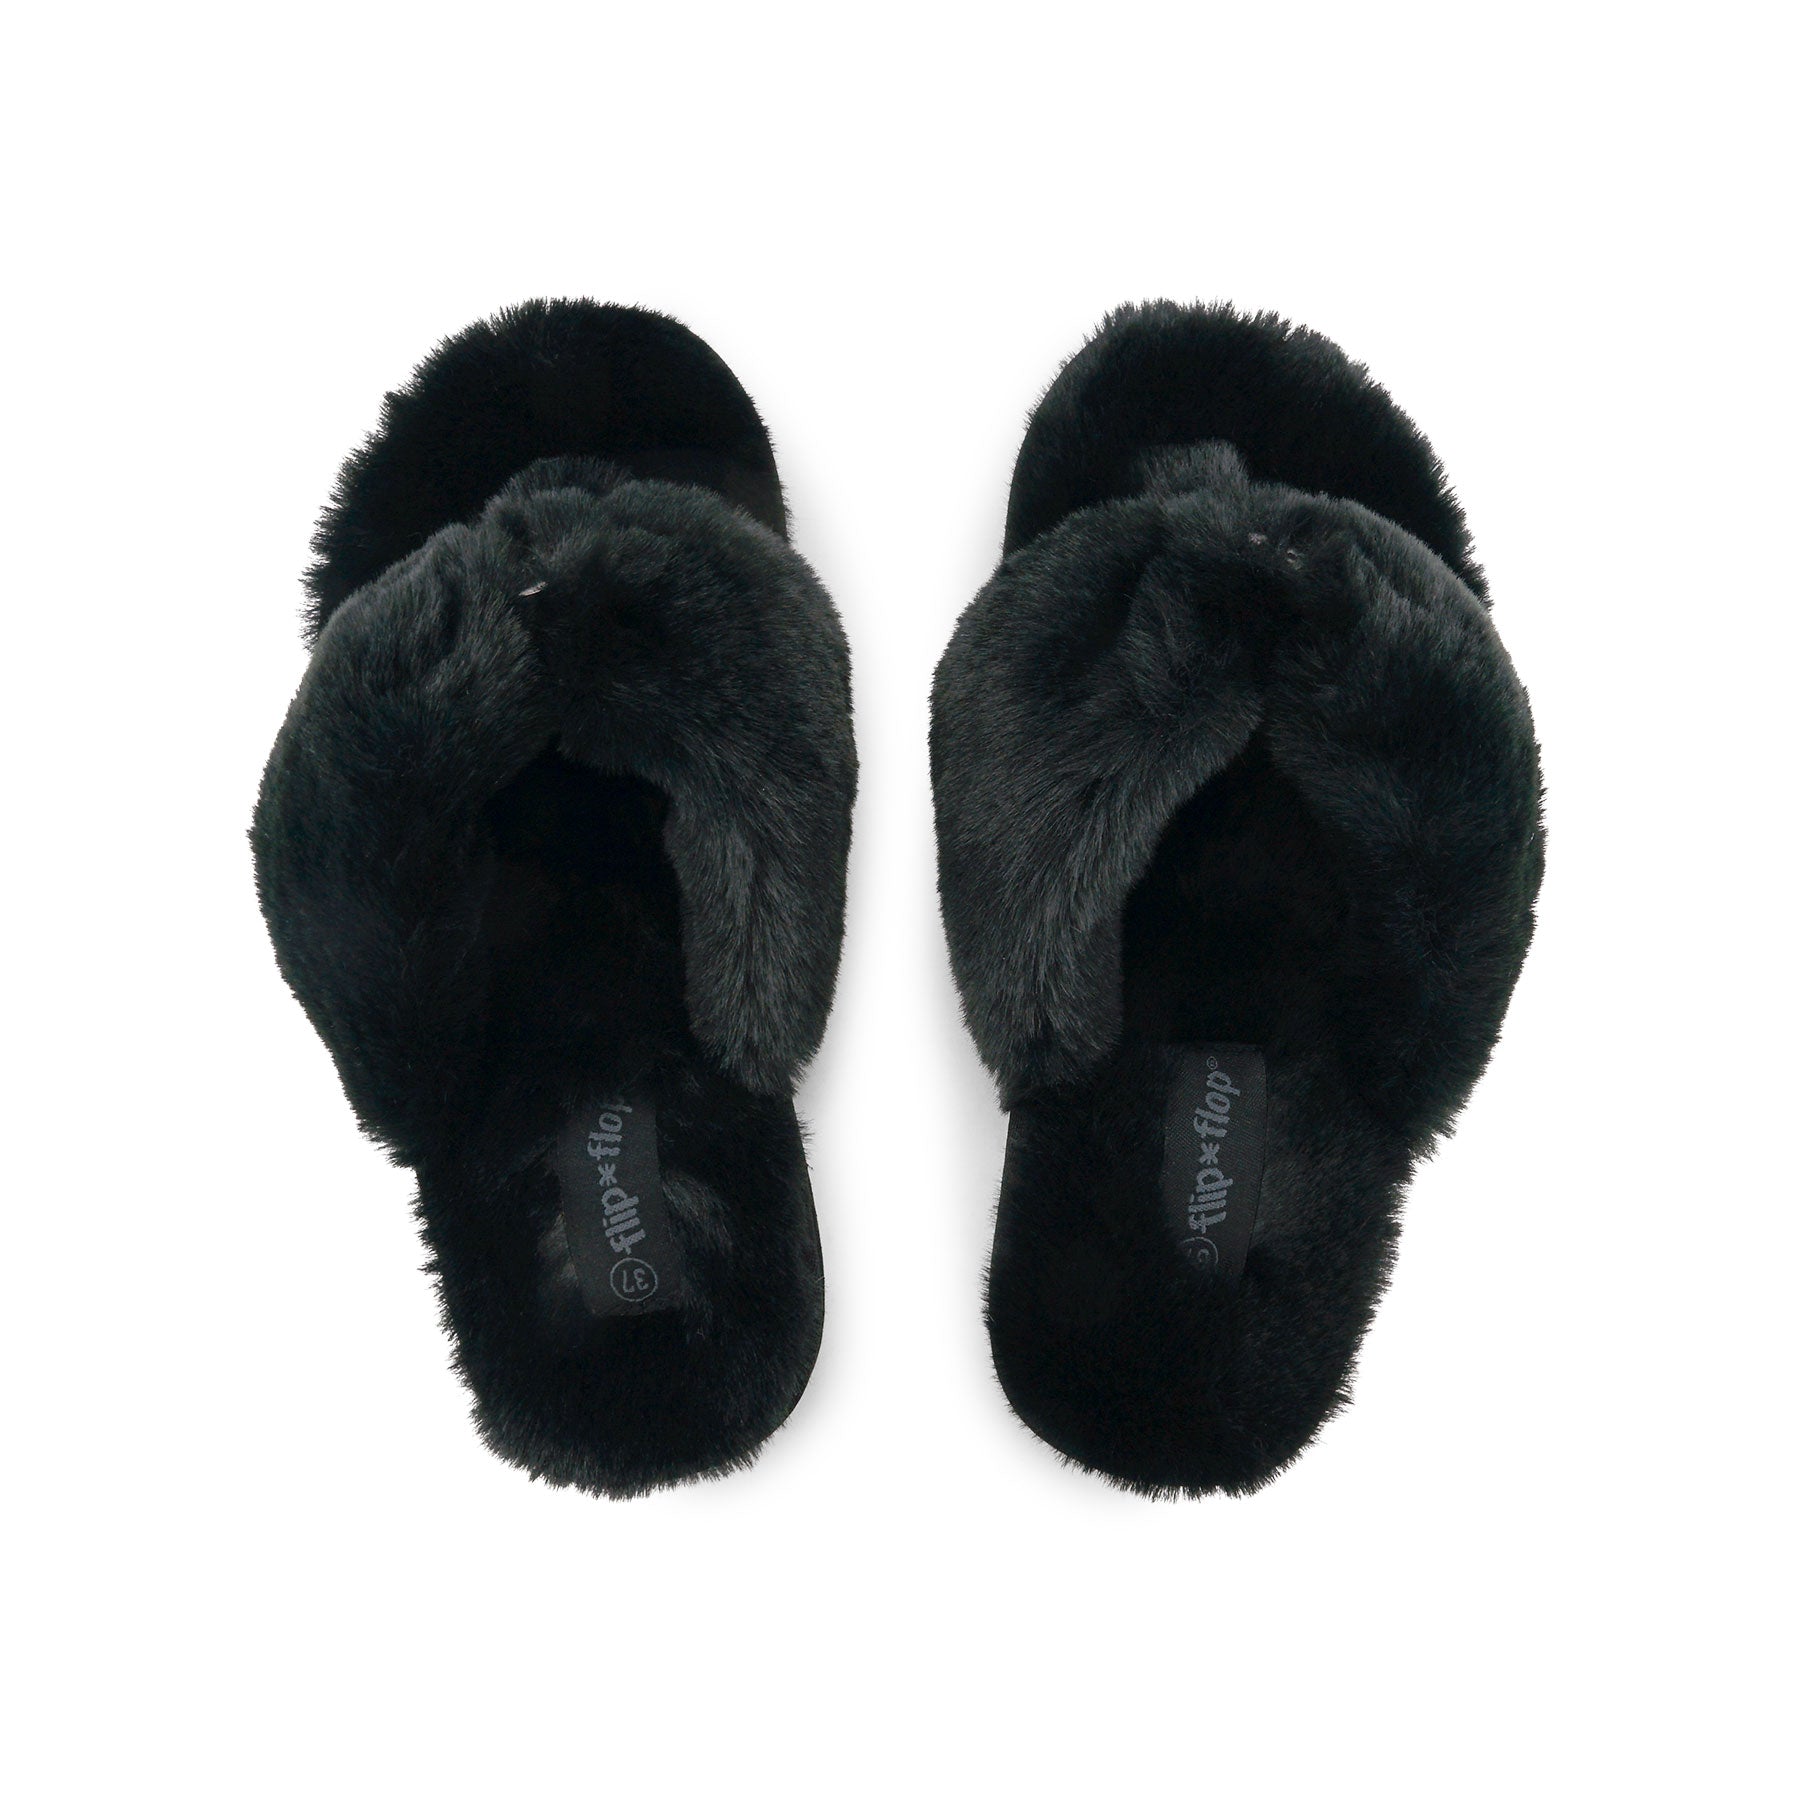 Cozy Fur Flip Flop in color black by Flip*Flop Original